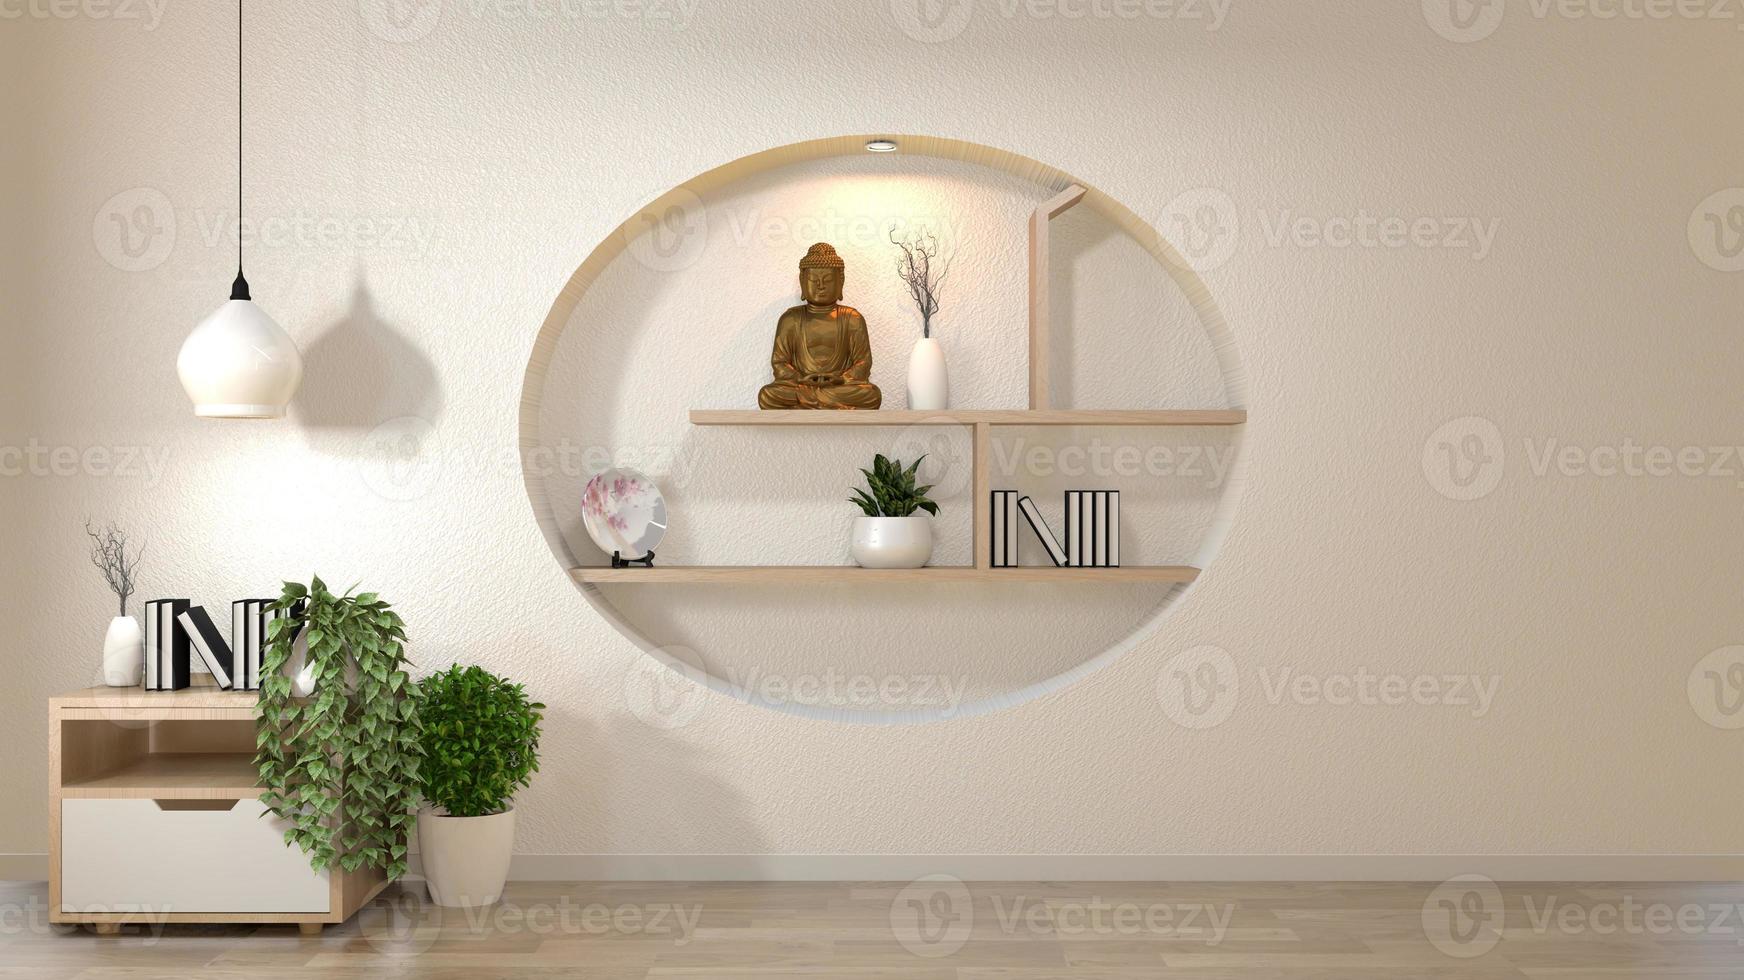 parete bianca mock up stanza vuota con libro e vaso e piante su mobile, decorazione su mensola parete design stile giapponese. rendering 3d foto